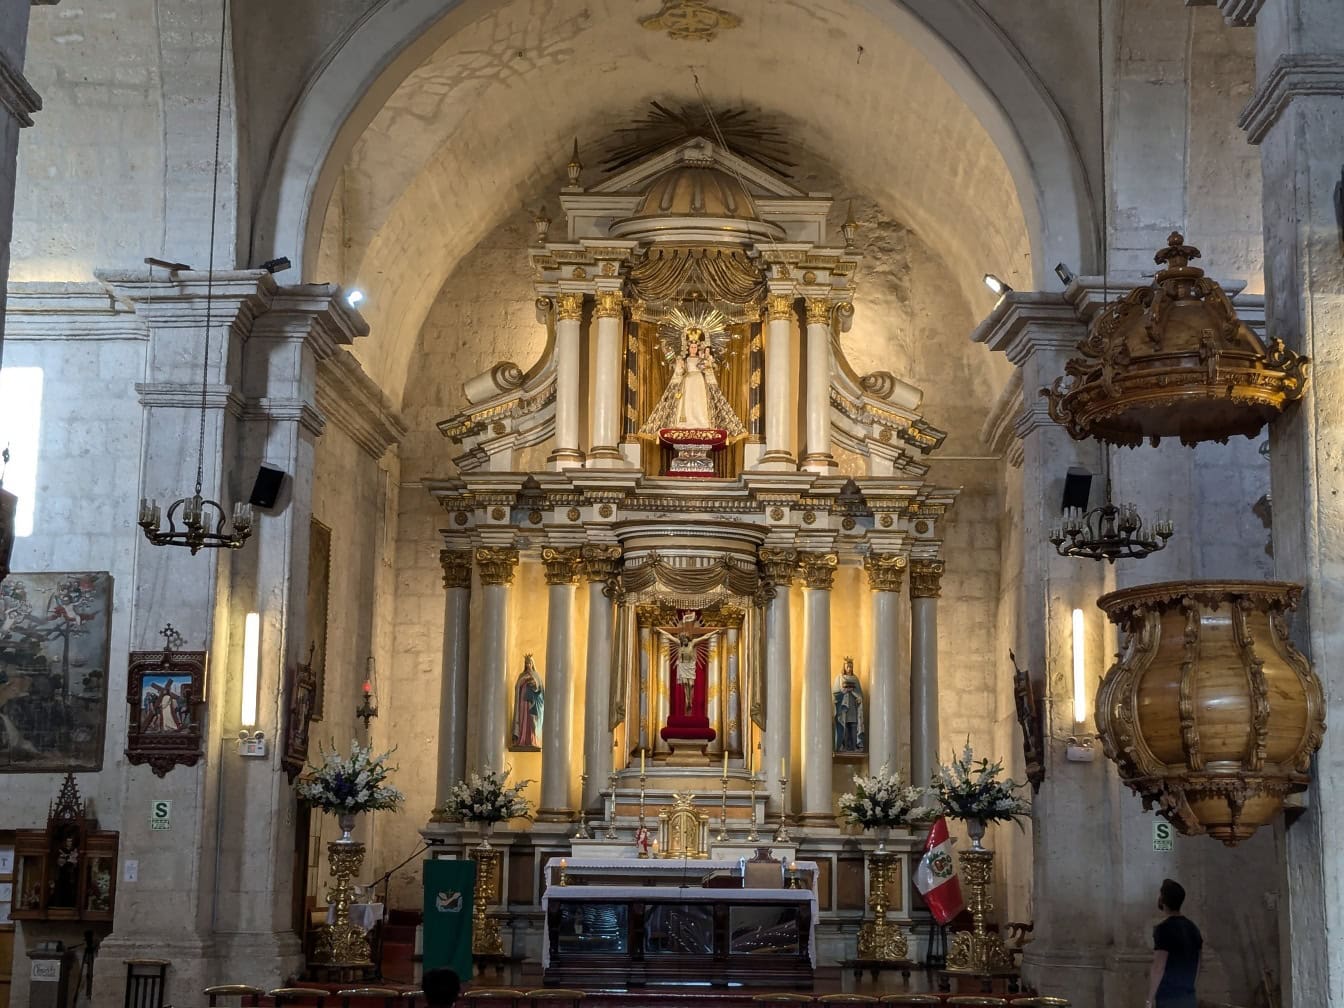 Інтер’єр католицької церкви в Перу зі статуєю на багато прикрашеному вівтарі